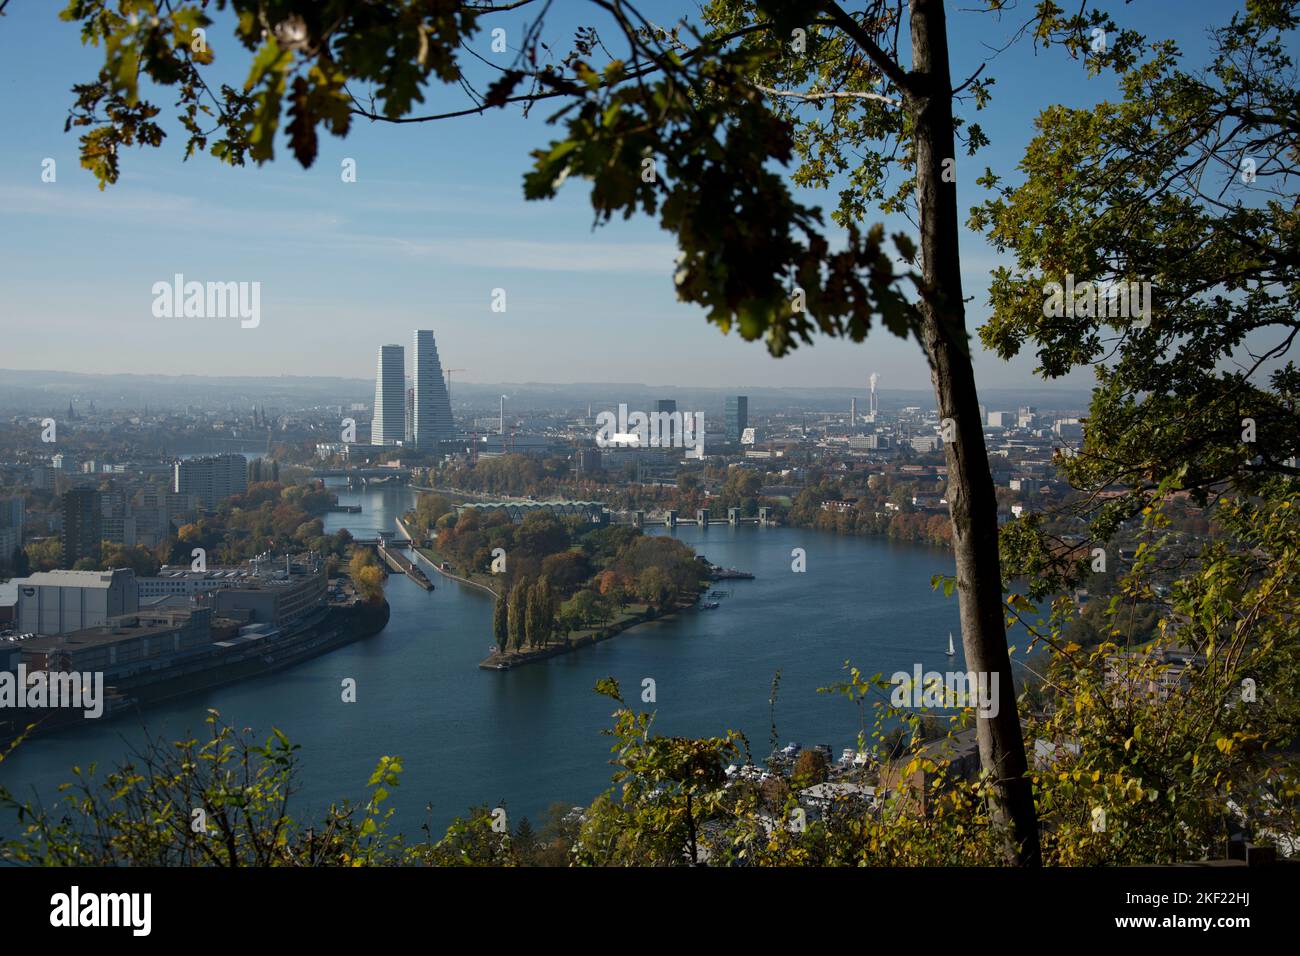 Eindrücklicher Blick vom deutschen Hornfelsen auf die Stadt Basel und die Roche-Türme Foto Stock